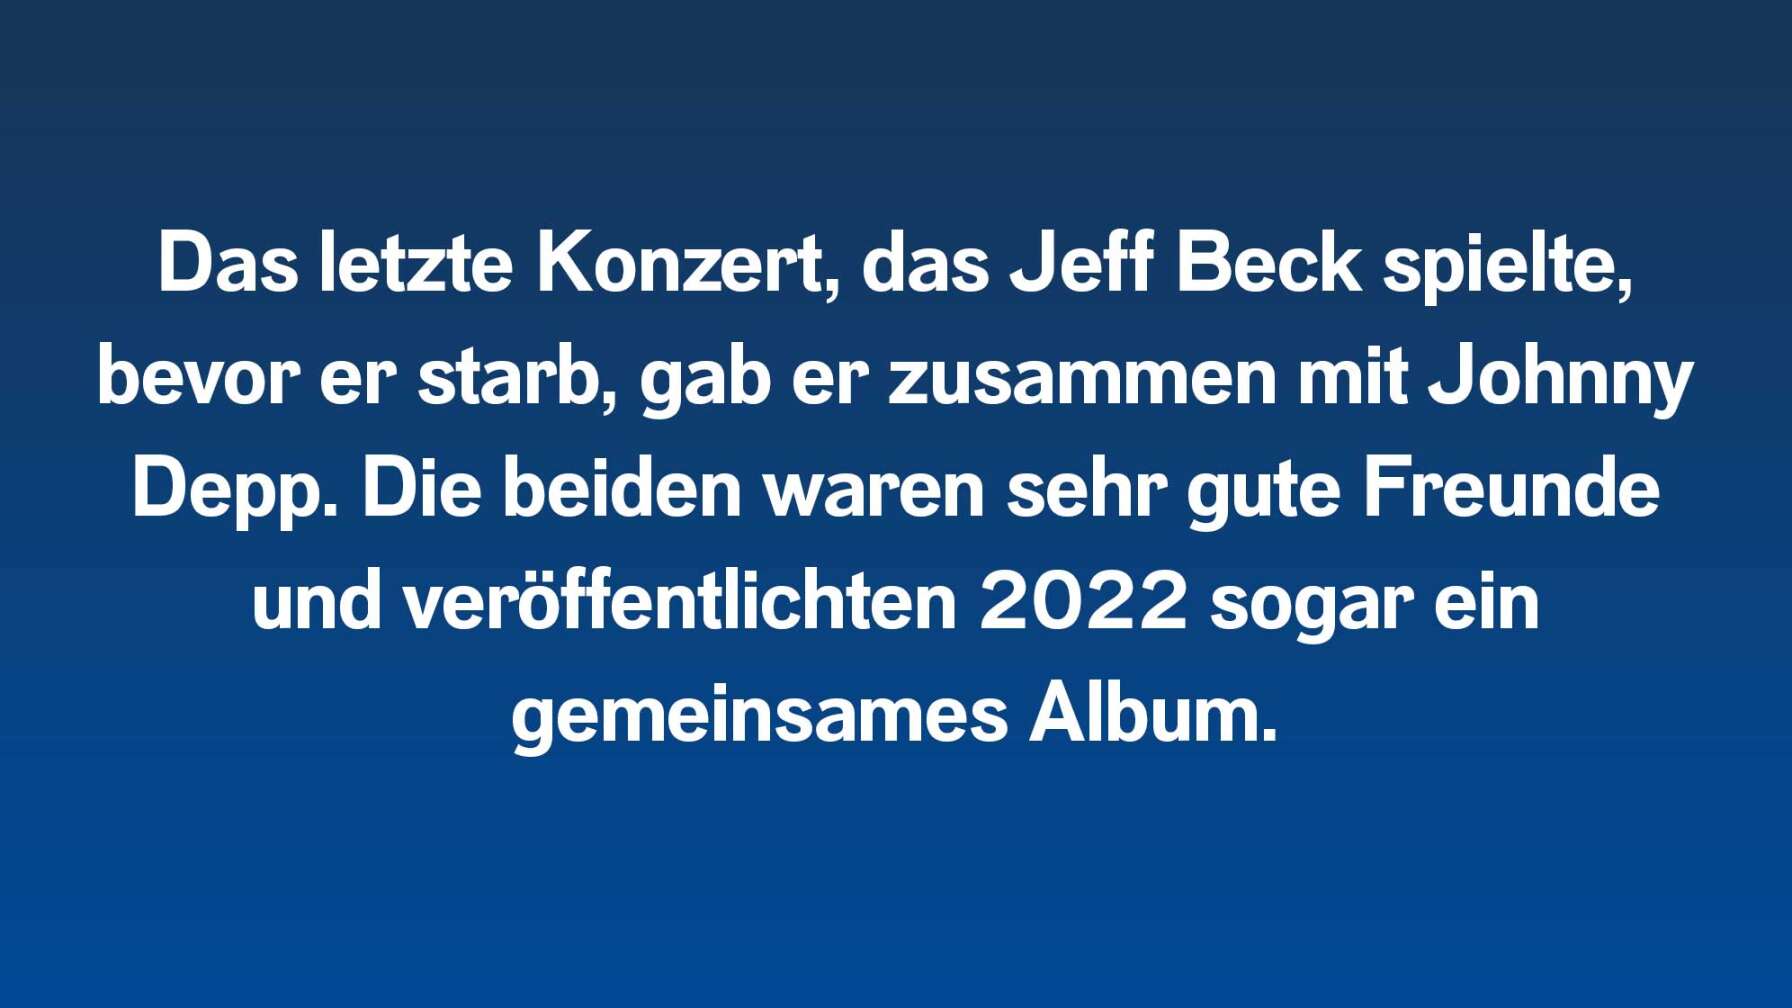 Das letzte Konzert, das Jeff Beck spielte, bevor er starb, gab er zusammen mit Johnny Depp. Die beiden waren sehr gute Freunde und veröffentlichten 2022 sogar ein gemeinsames Album.